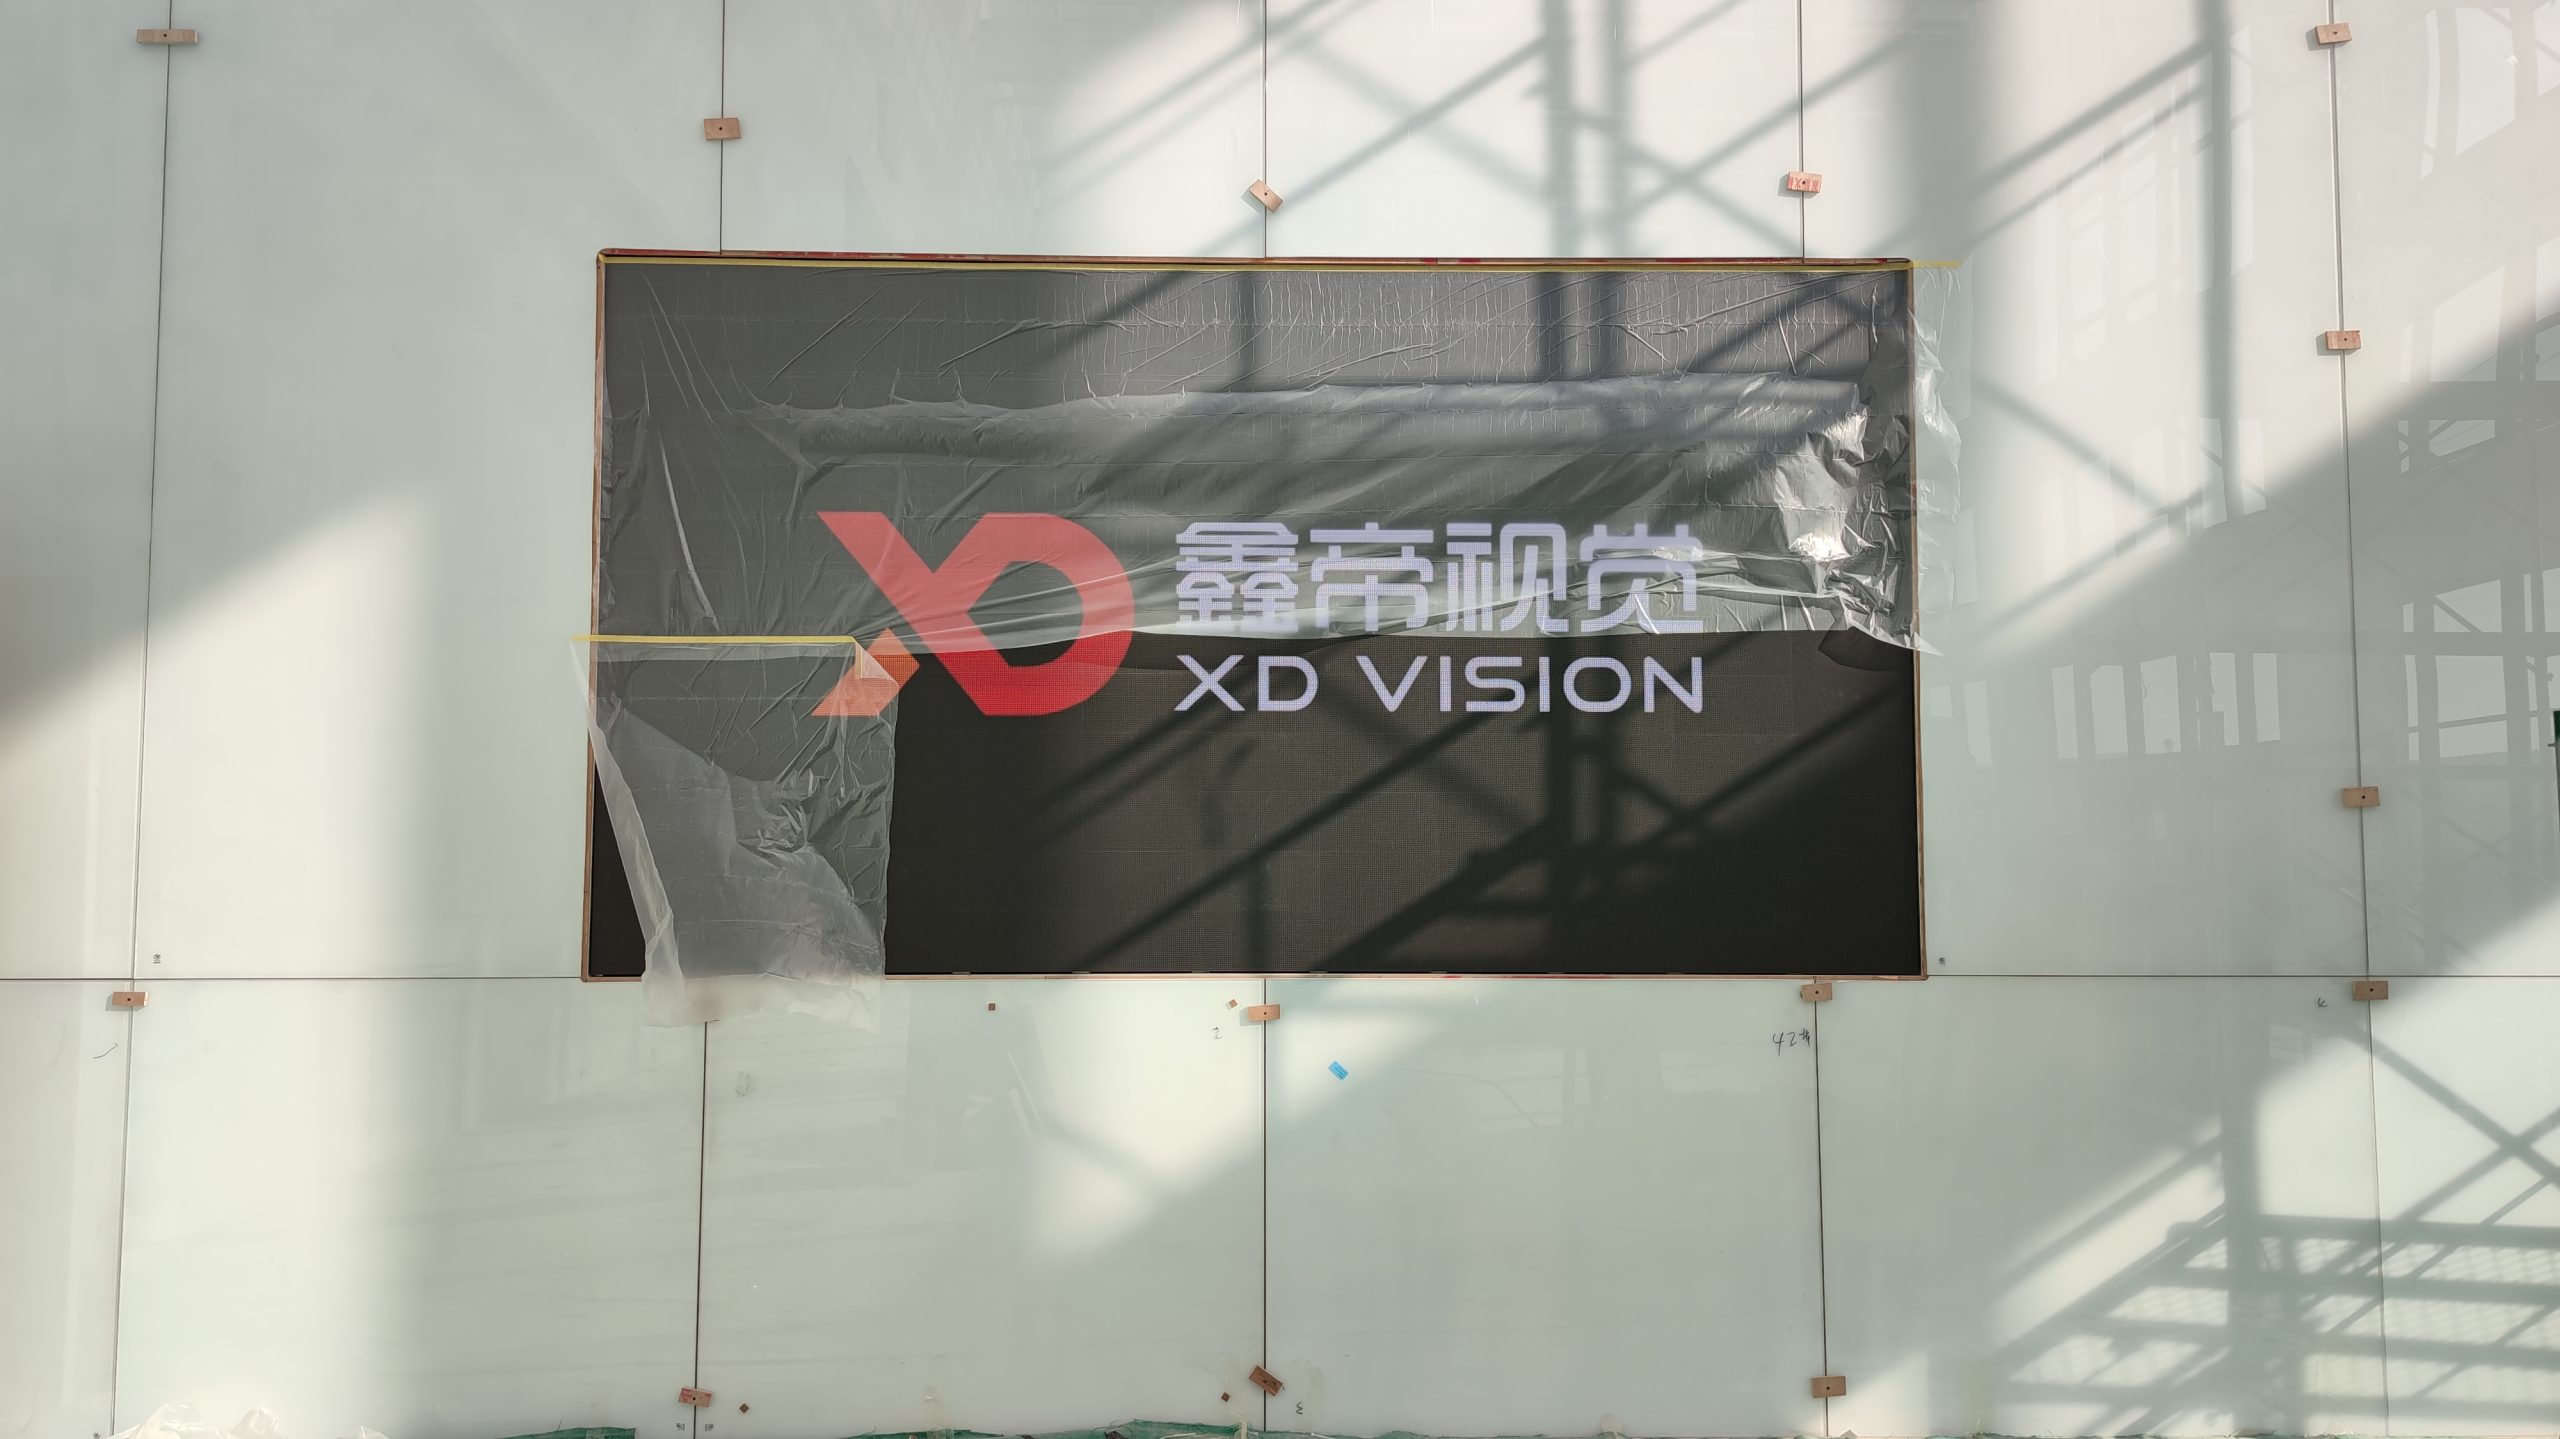 Centro de exposiciones de tecnología y cultura del grupo Shandong Haoxin